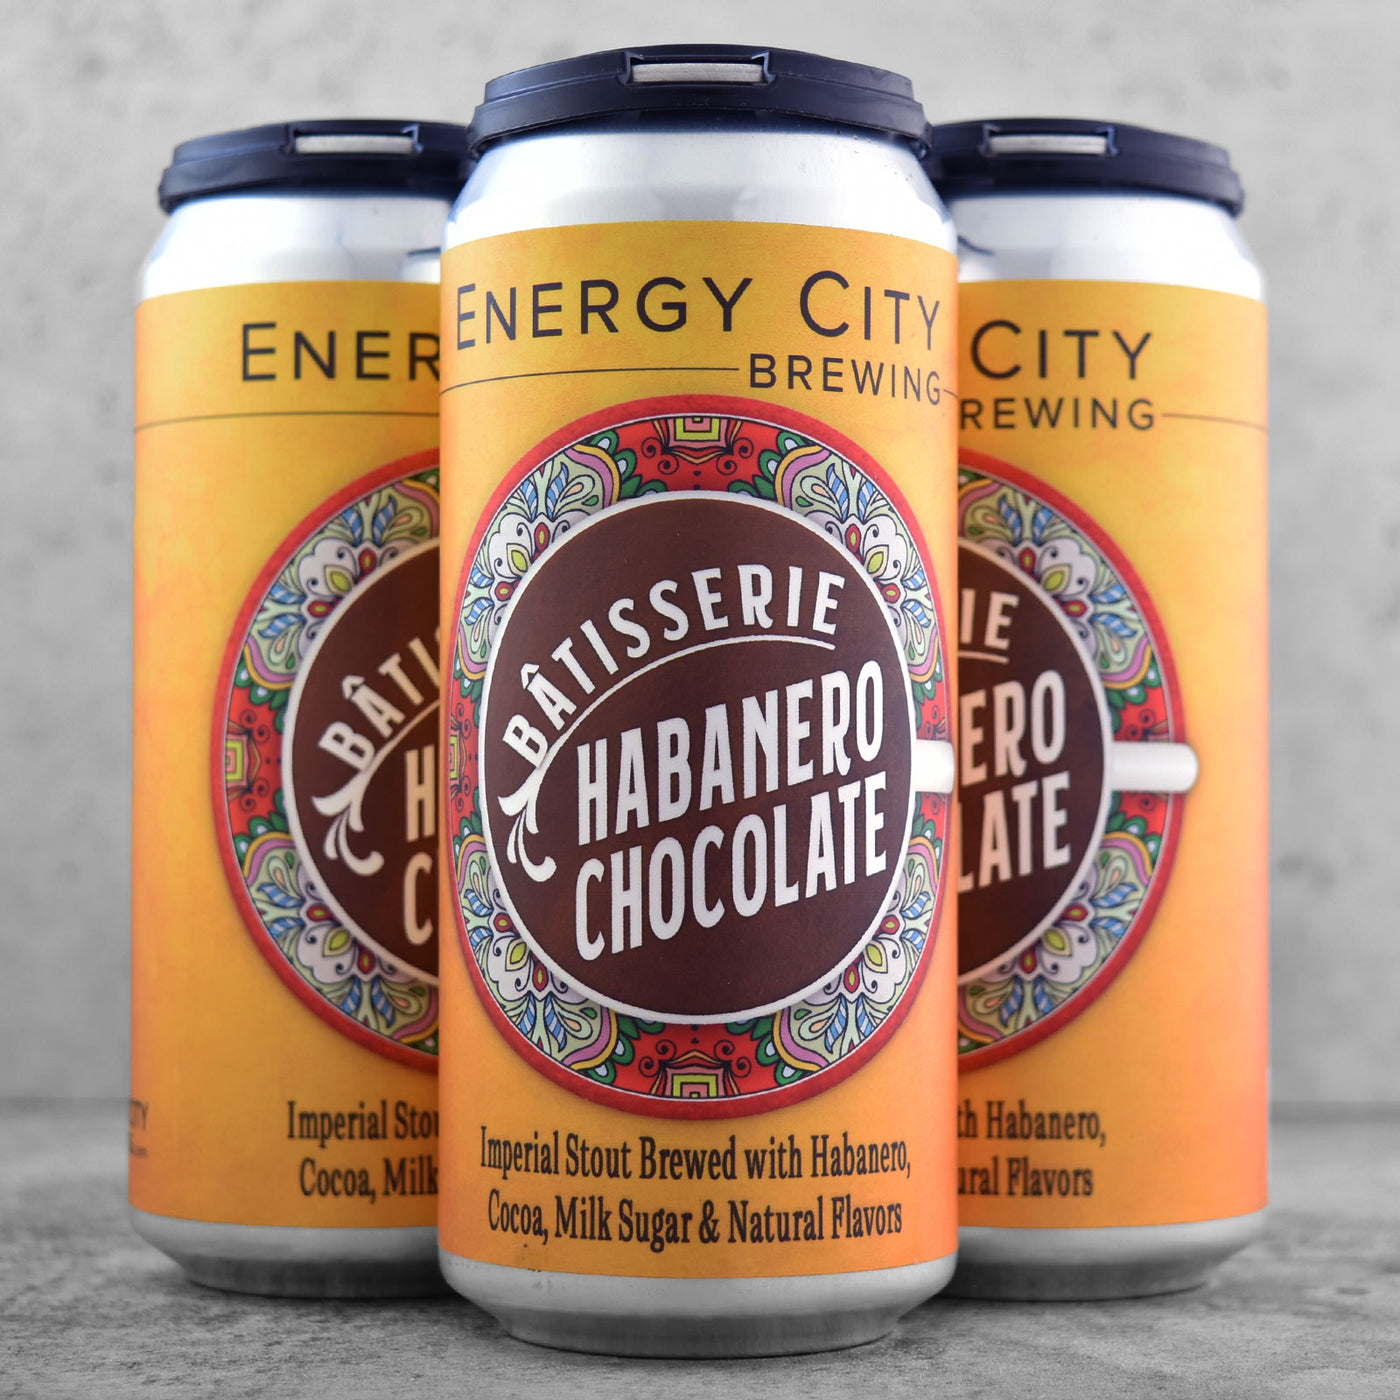 Energy City Batisserie Chocolate Habanero